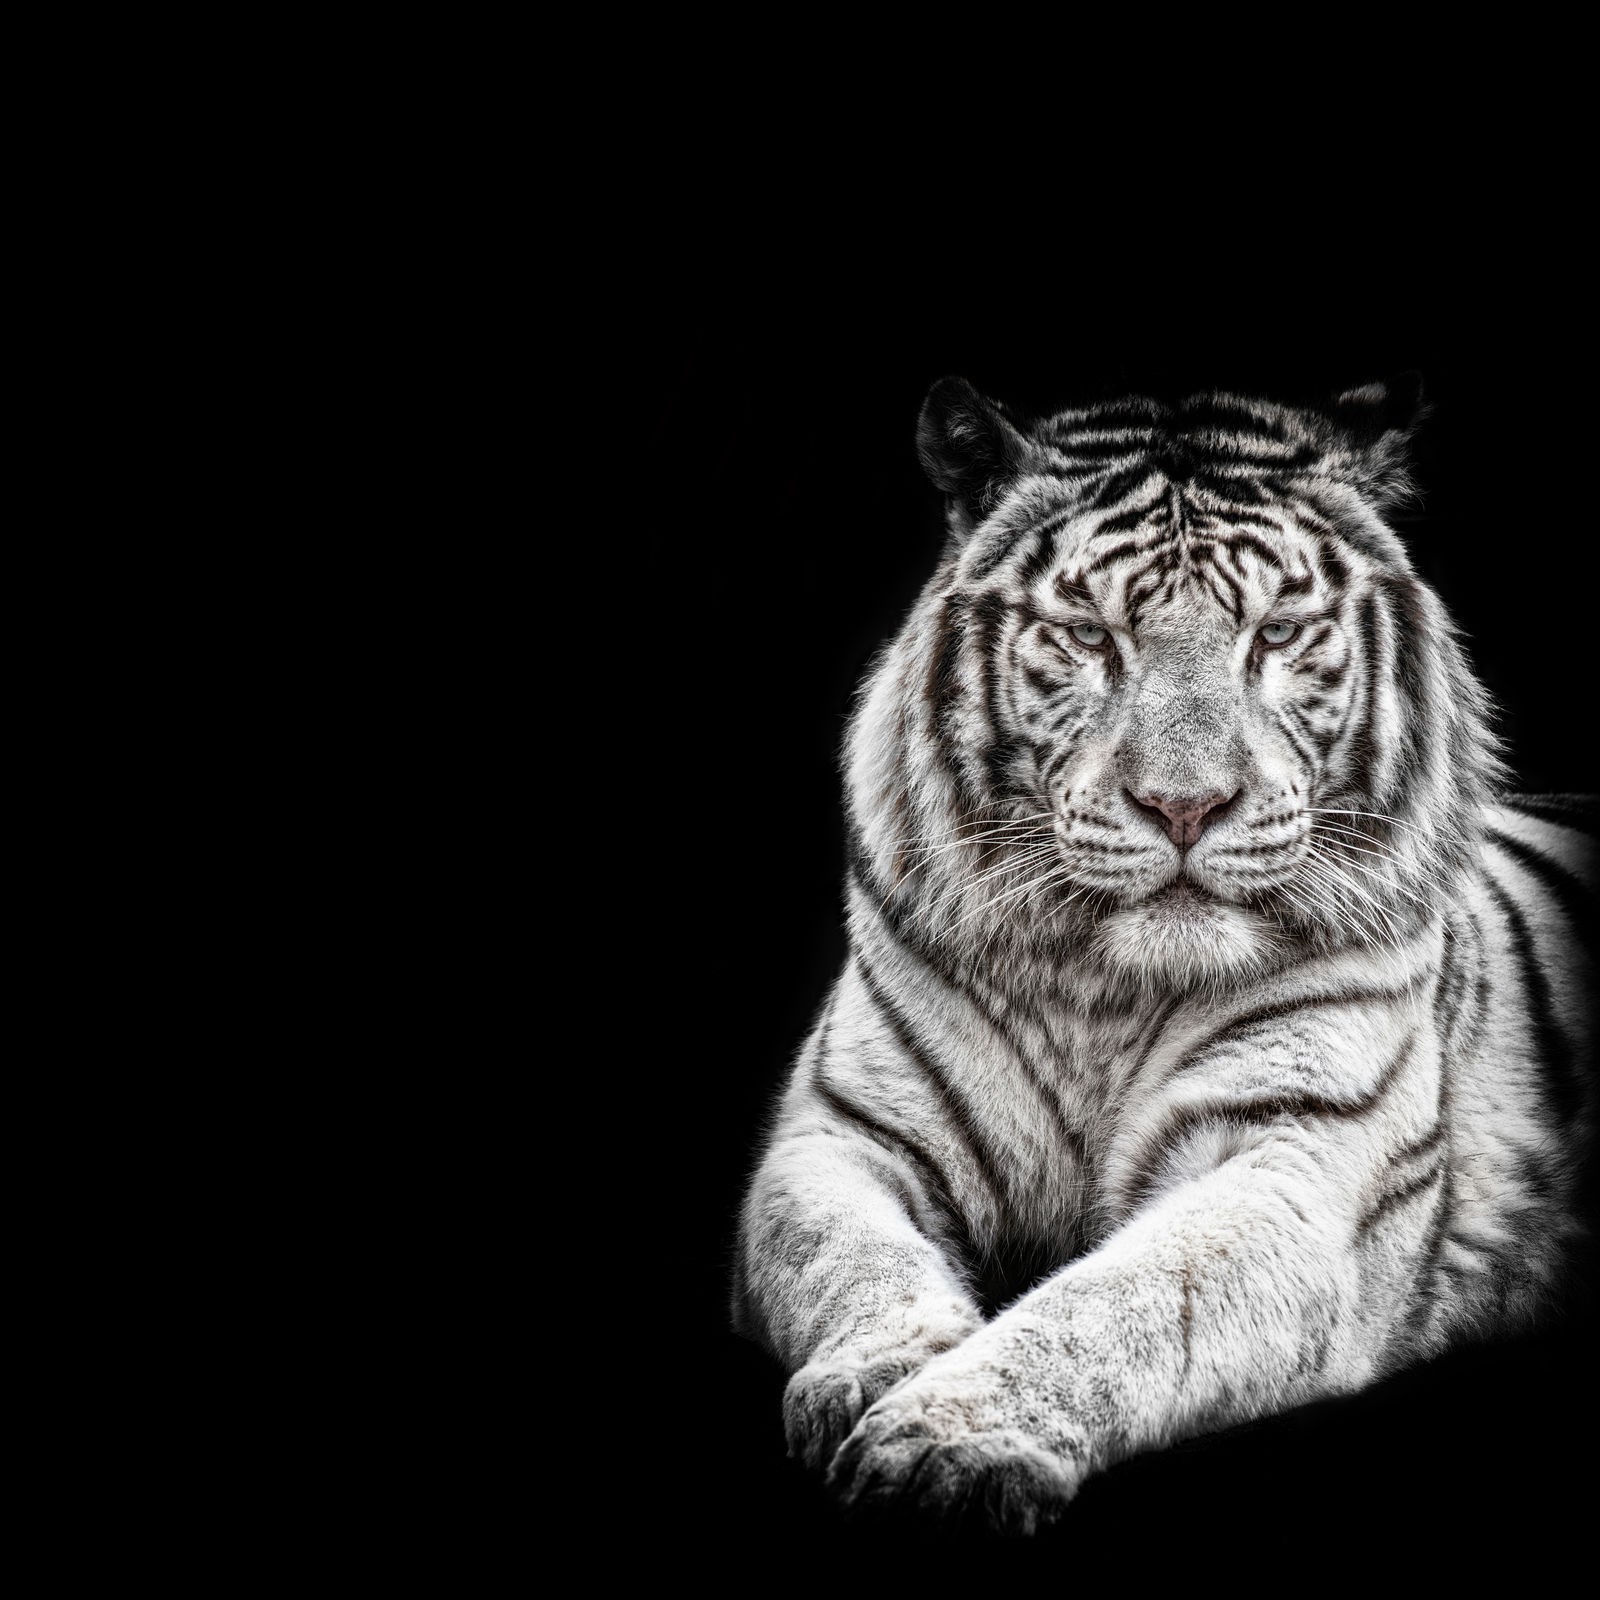 Ρόλερ Ολικής Συσκότισης/Blackout AN0023 Ζώα-Λευκή τίγρη